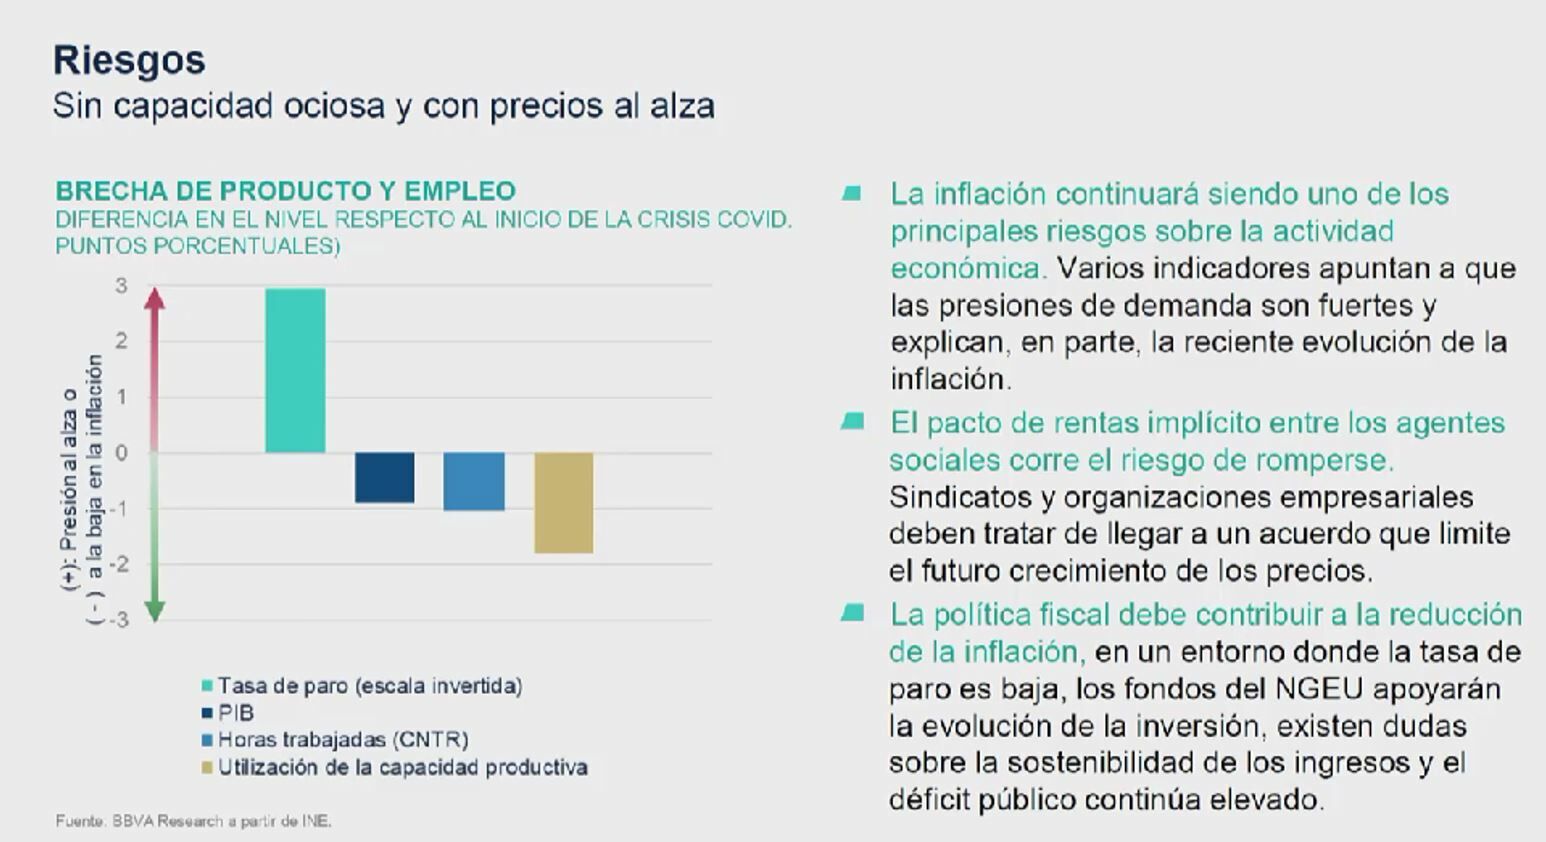 Potenciales riesgos de la economía española, según BBVA Research